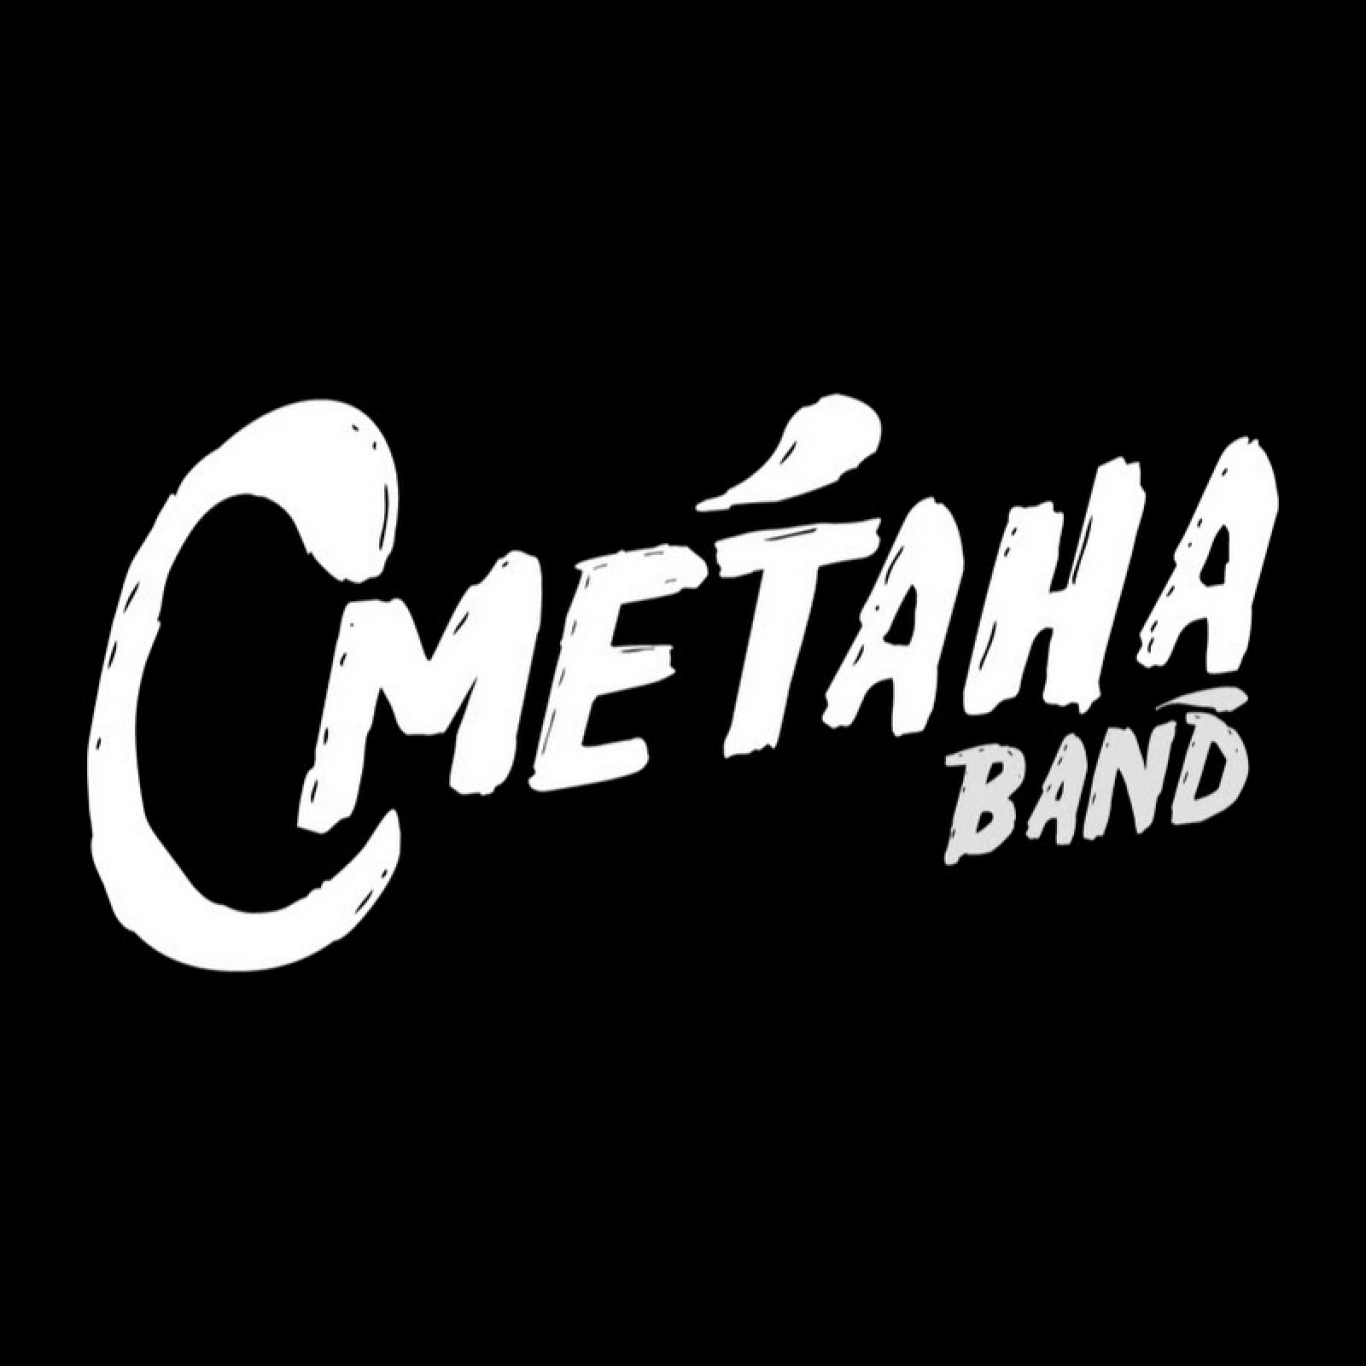 Логотип группы сметана Band